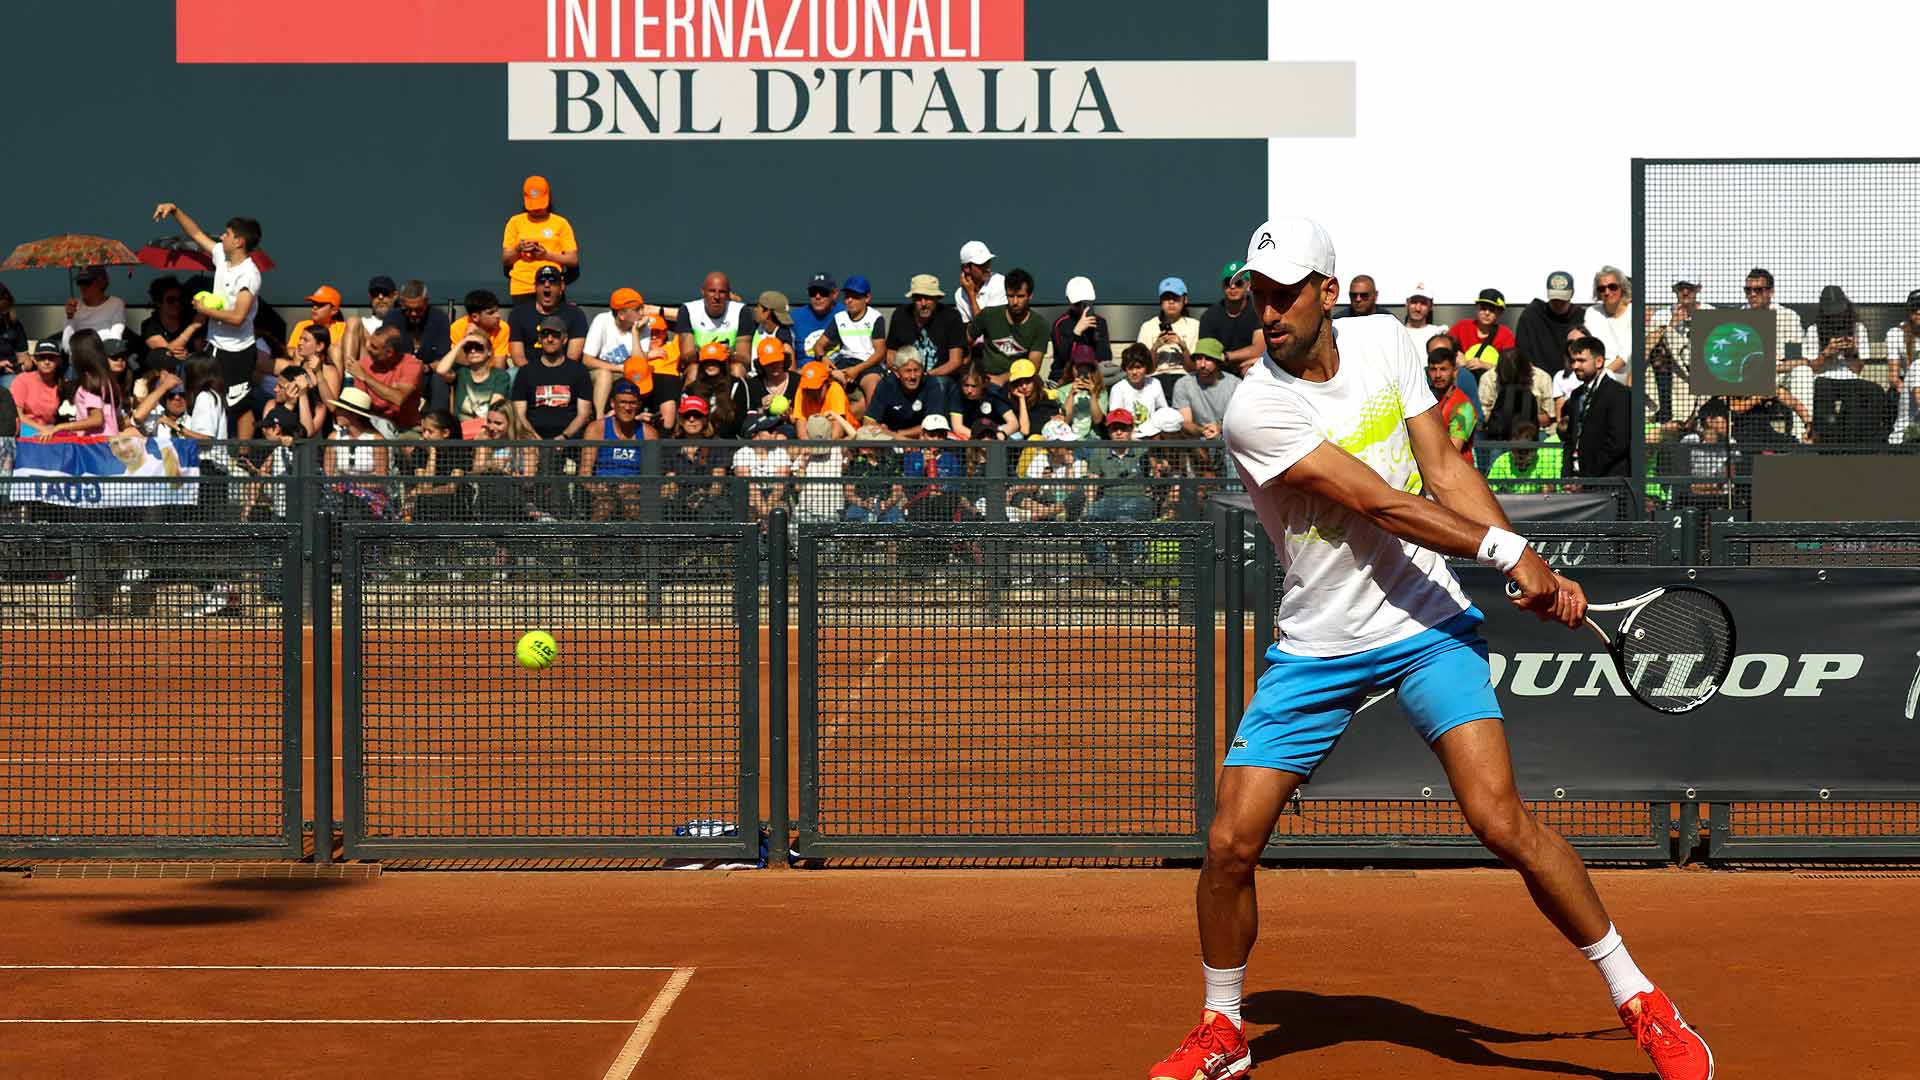 Novak Djokovic will pursue his seventh Rome title at the Foro Italico.